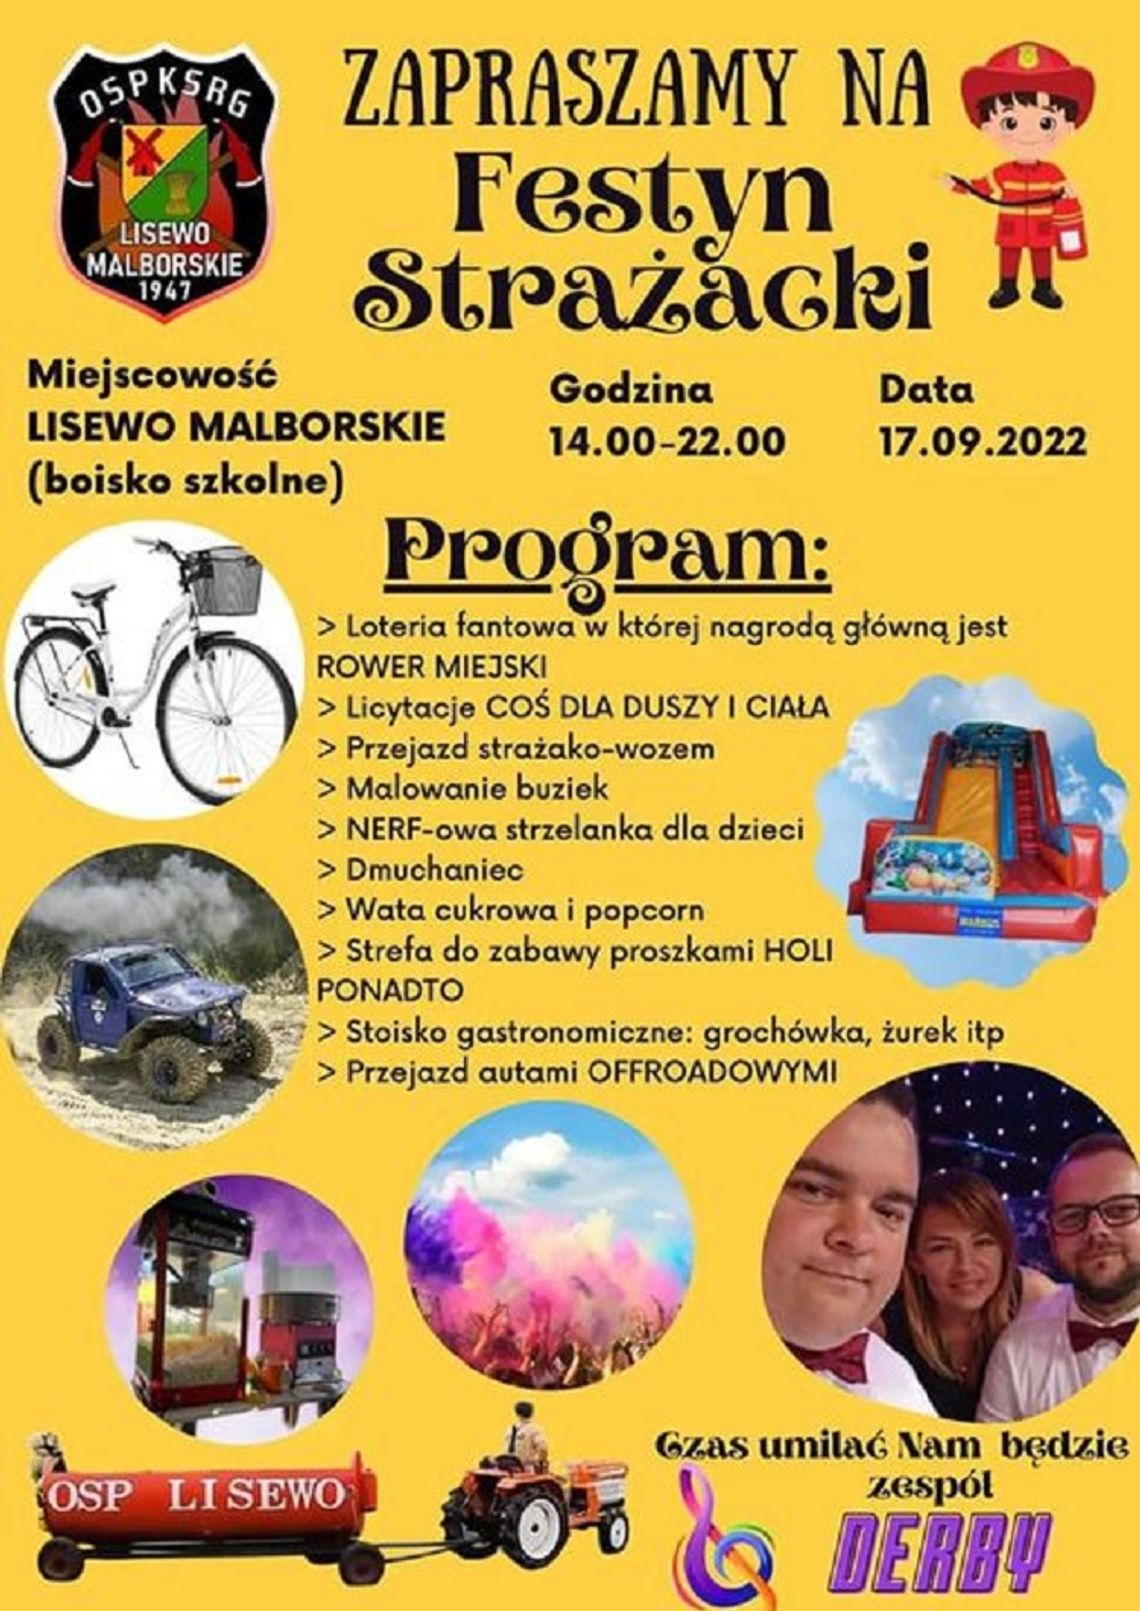 Festyn Strażacki w Lisewie Malborskim.